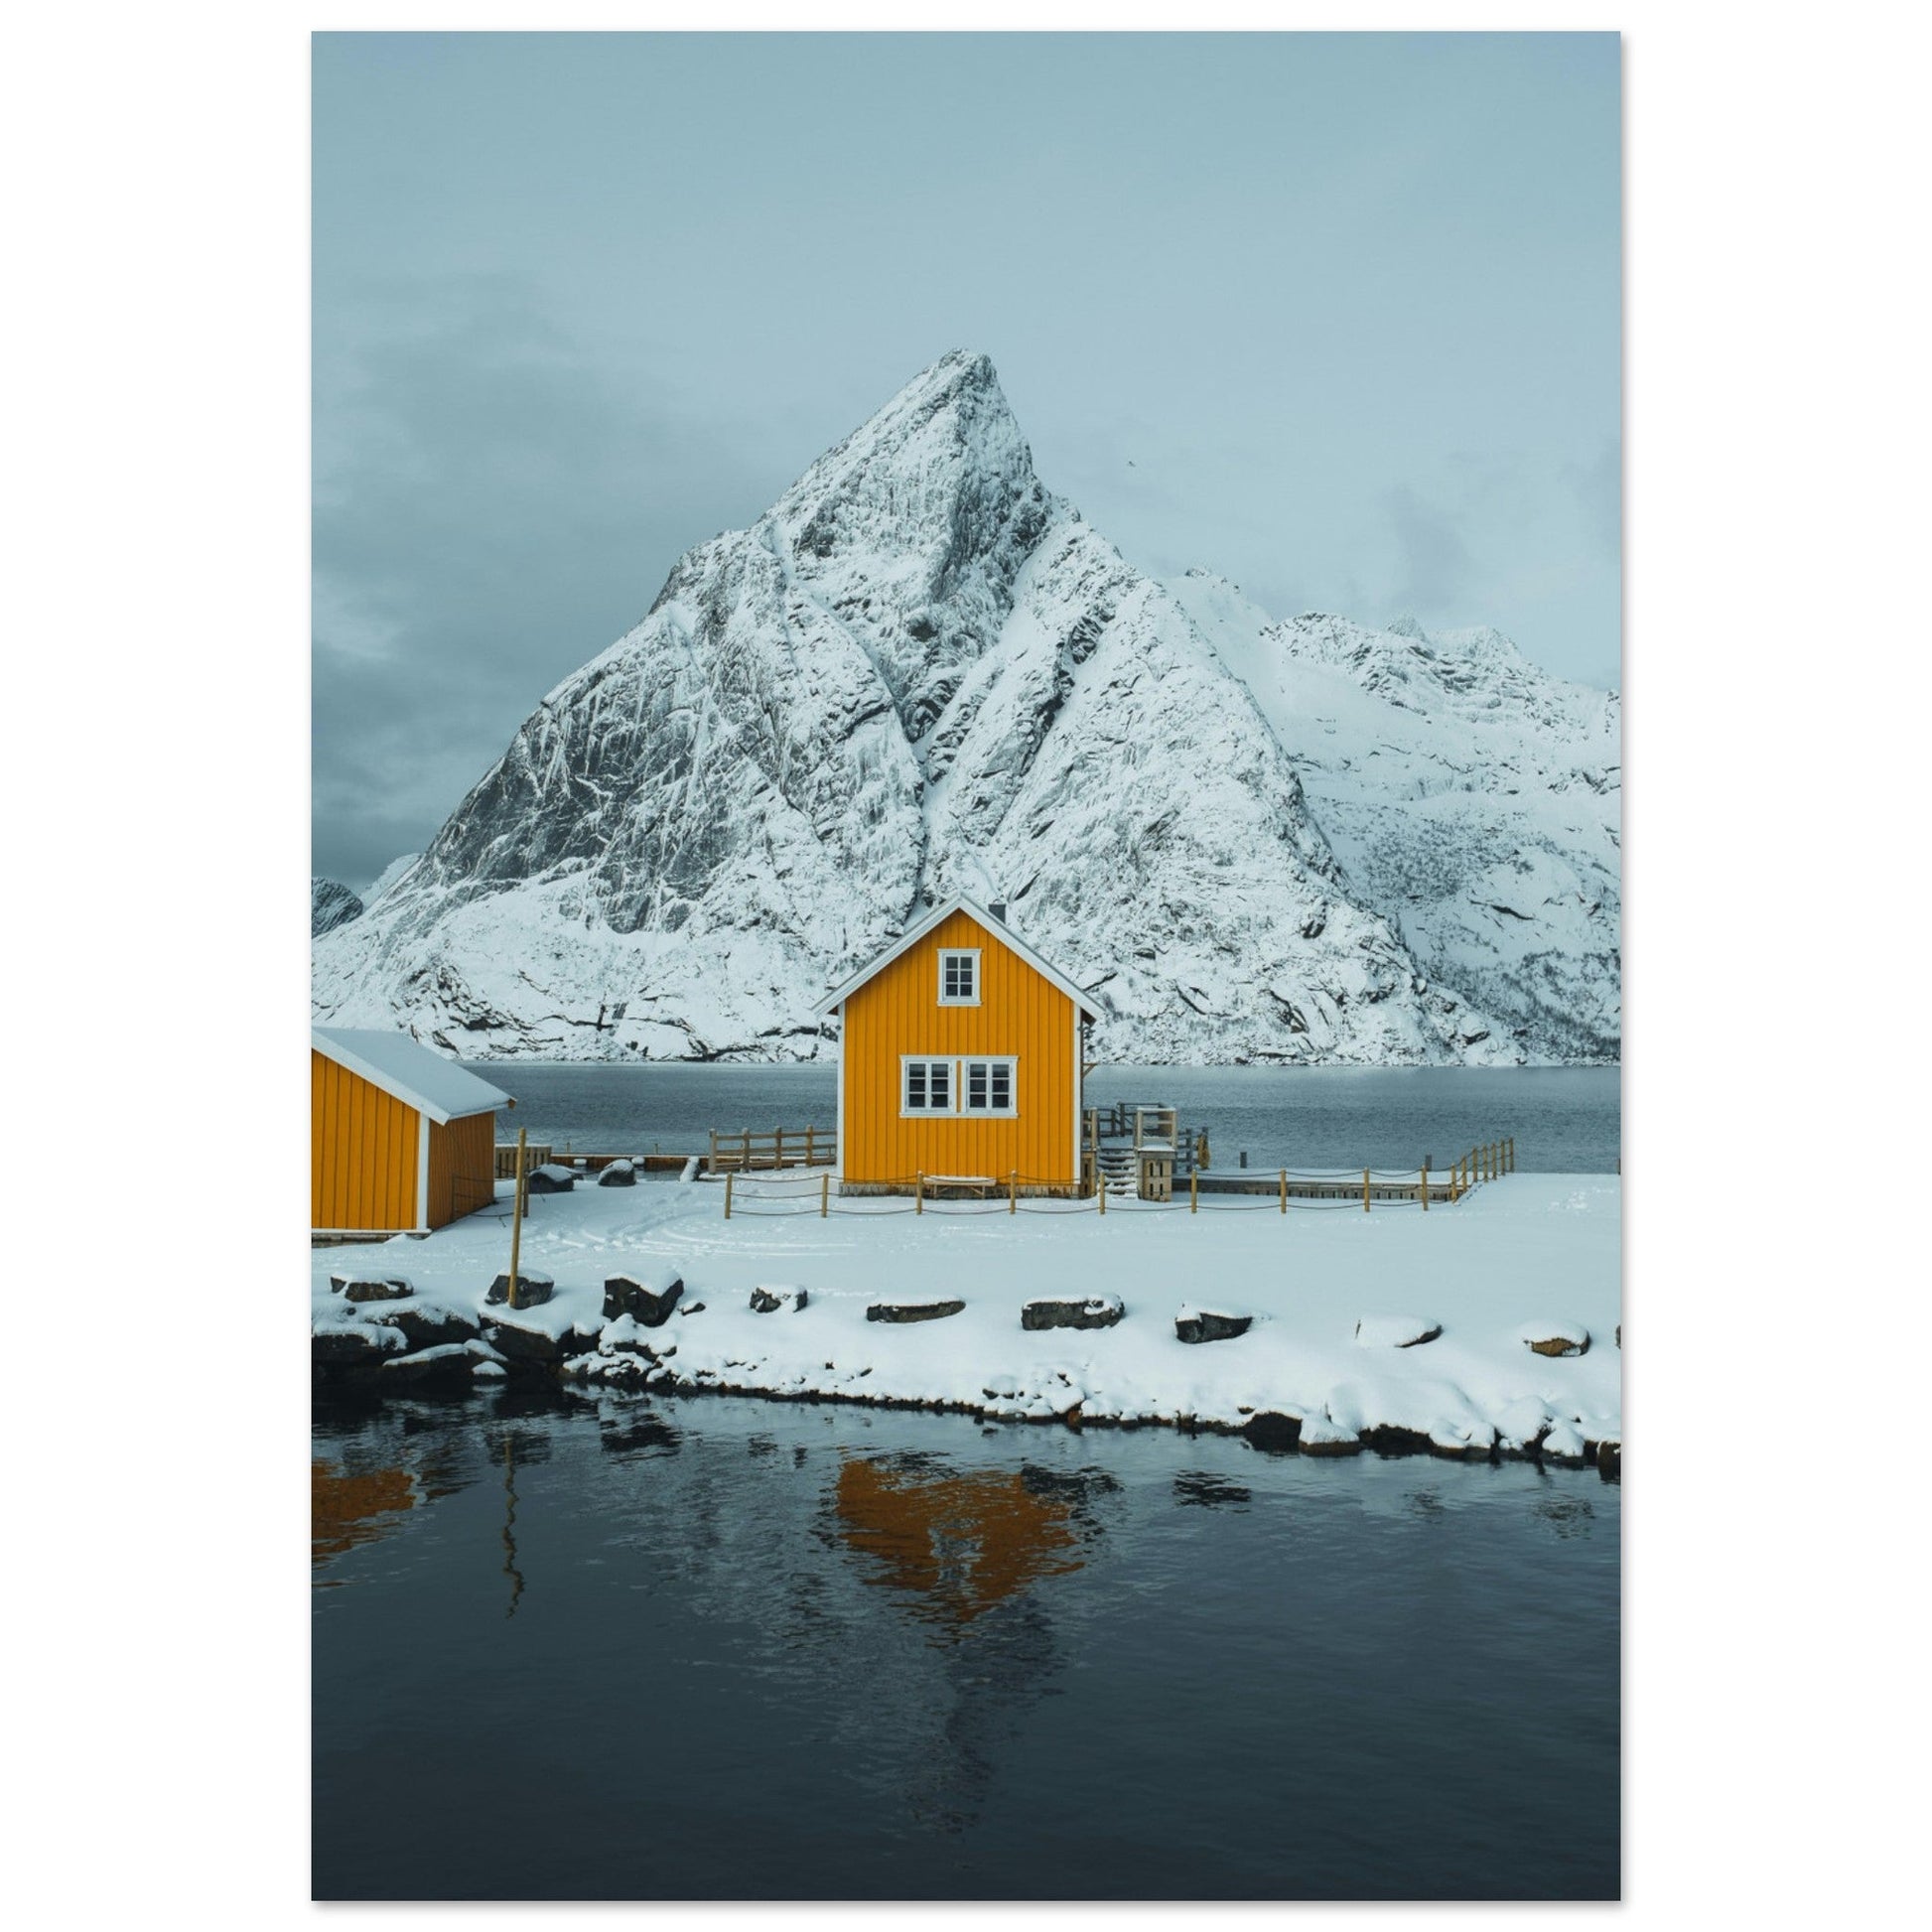 Vente Photo des Îles Lofoten en hiver, Norvège #1 - Tableau photo paysage